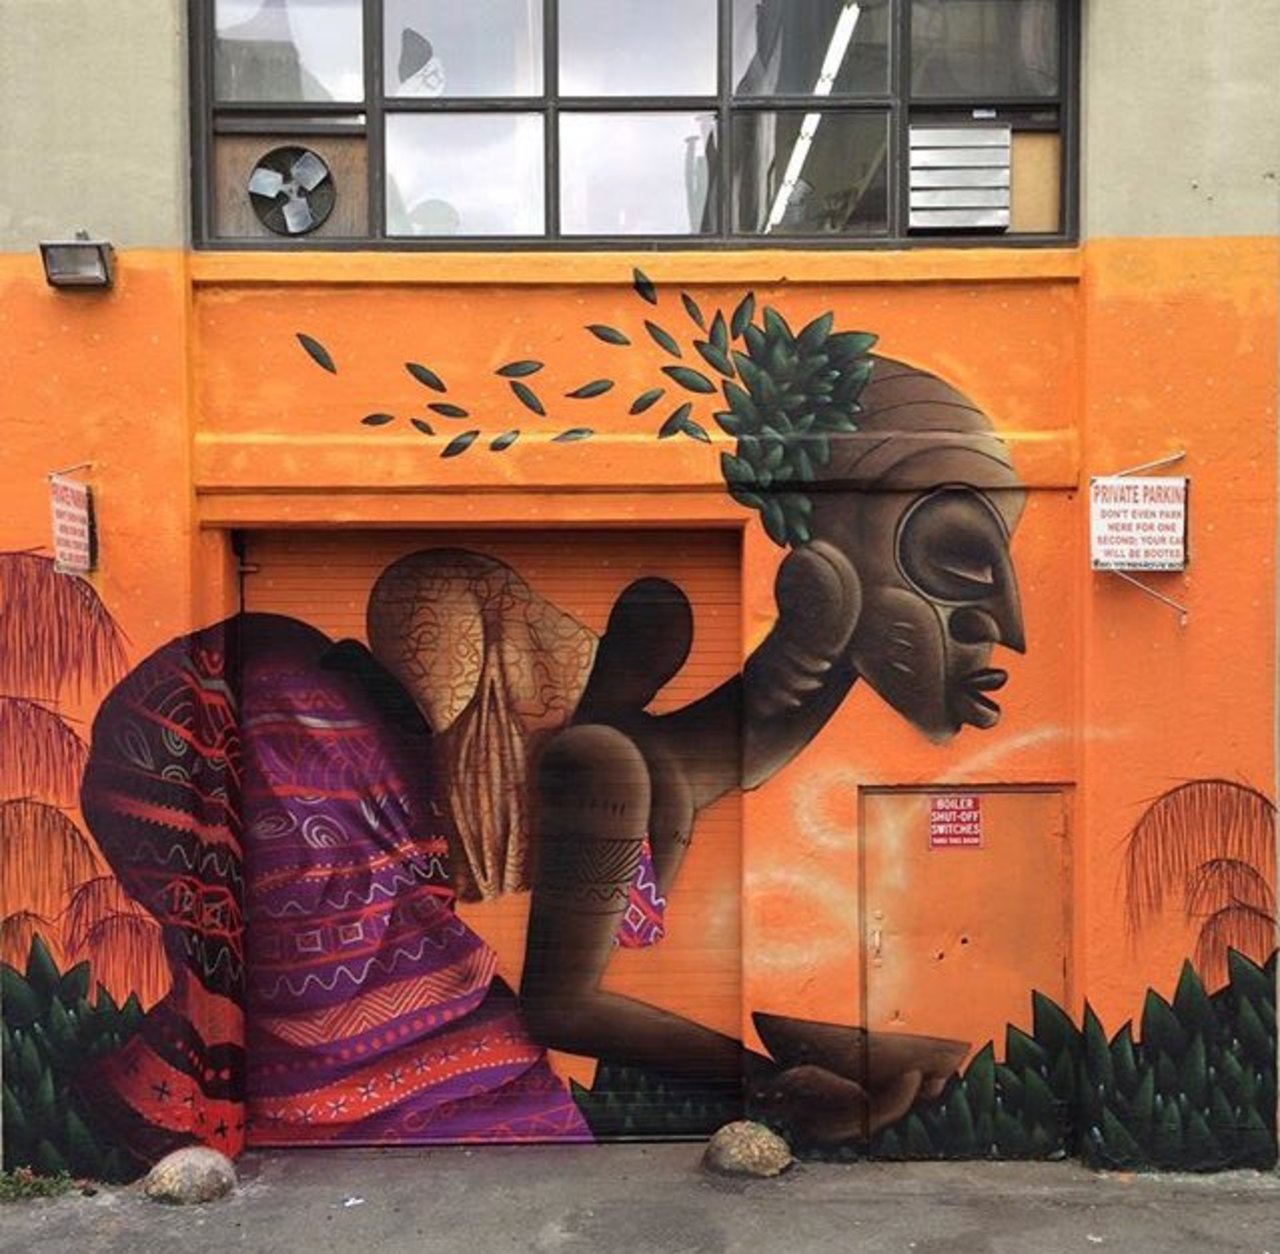 New Street Art by Alexandre Keto in NYC 

#art #graffiti #mural #streetart https://t.co/FJ5Z5Wyrls